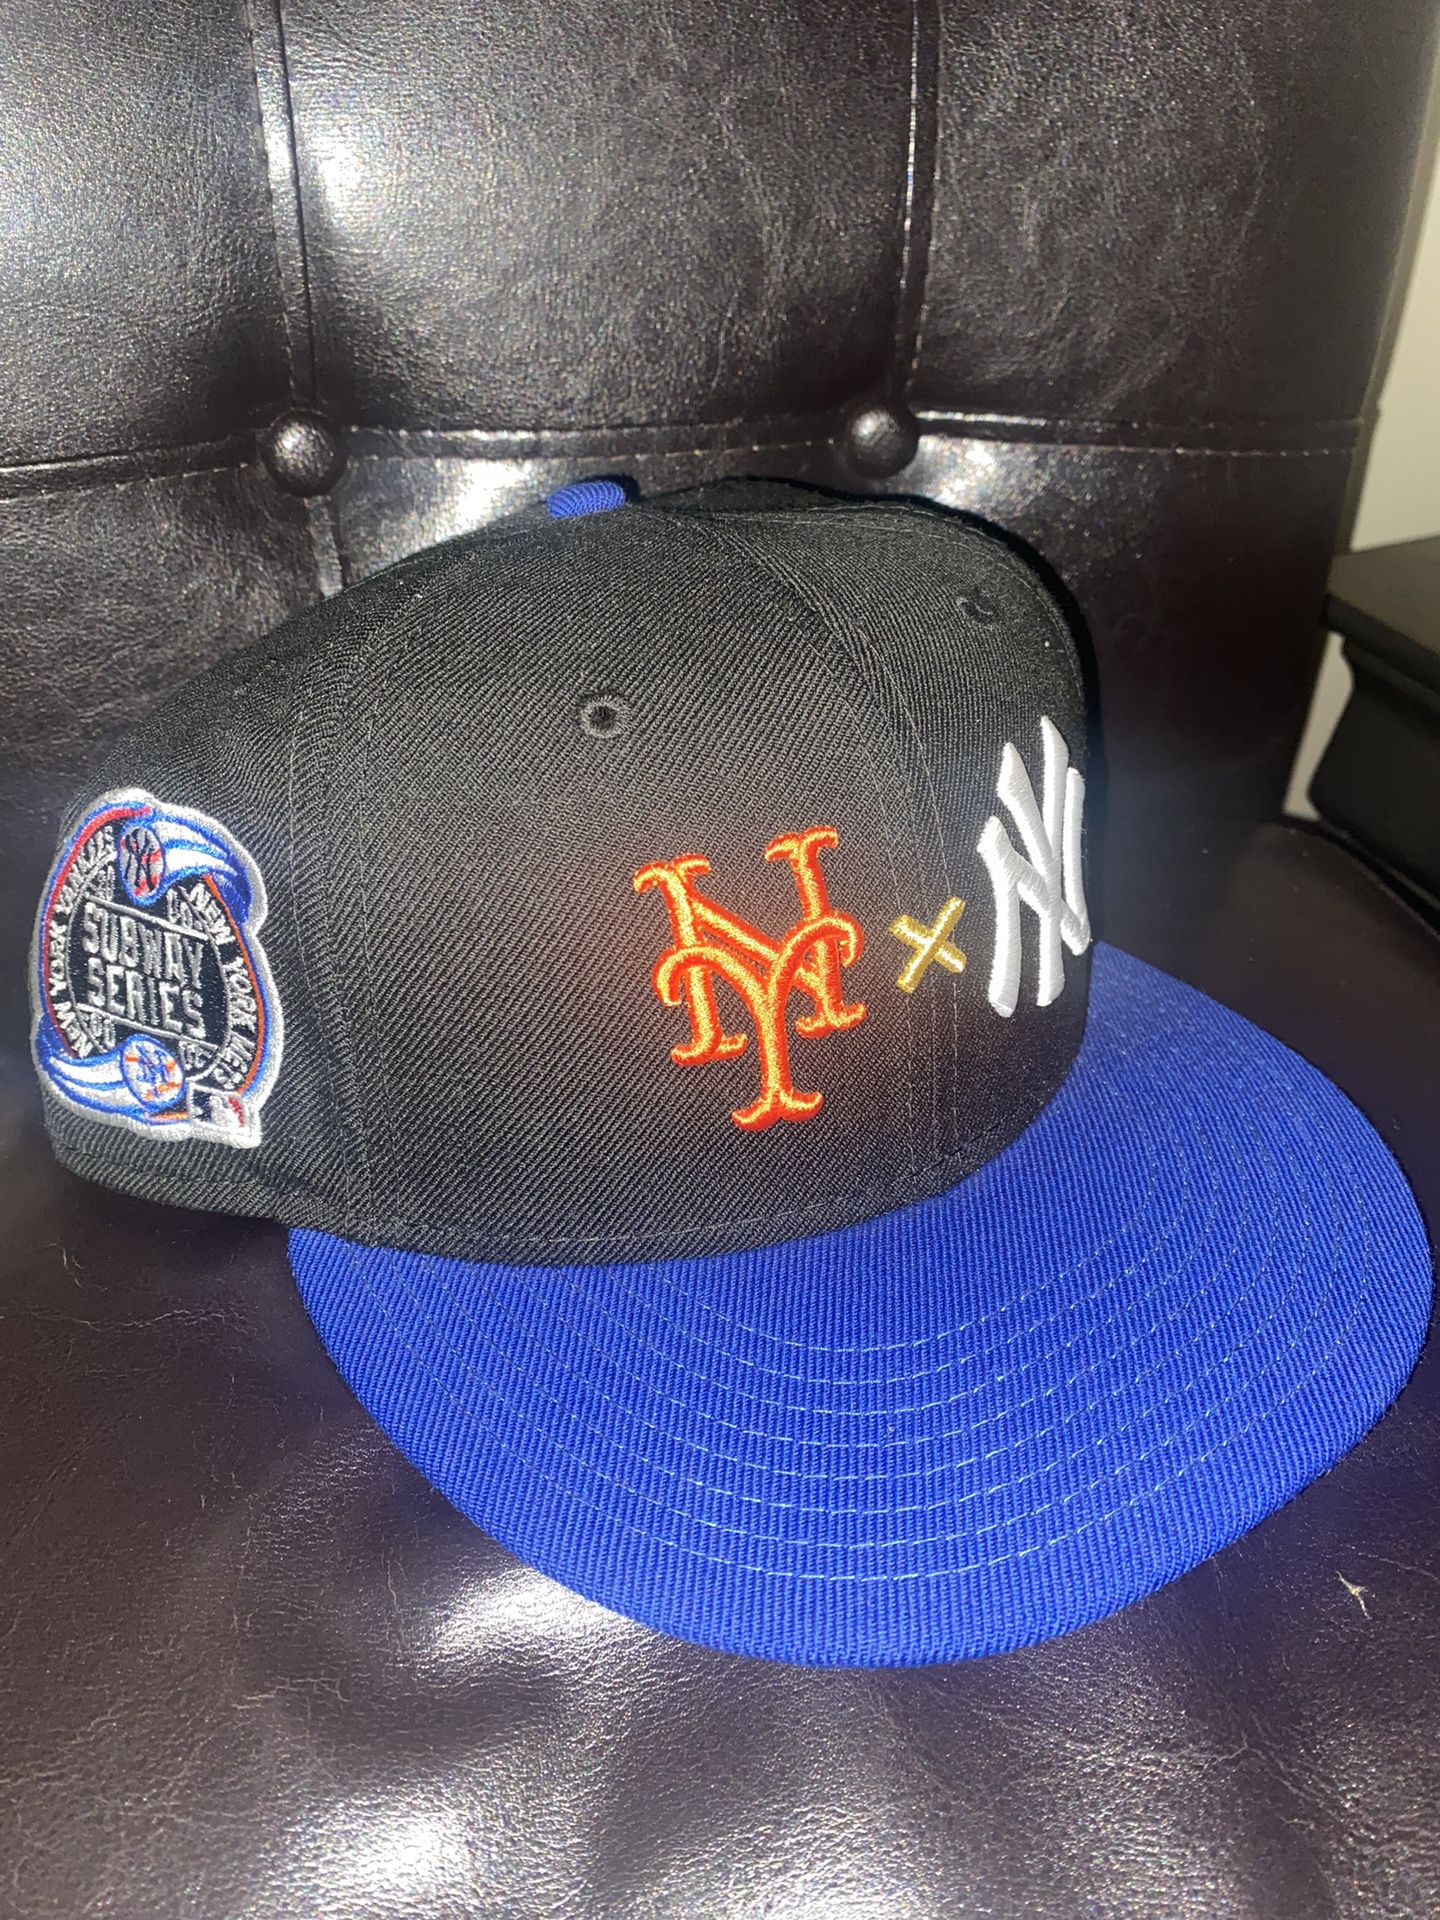 New Era Subway Series Yankees Mets Exclusive Hat Deadstock